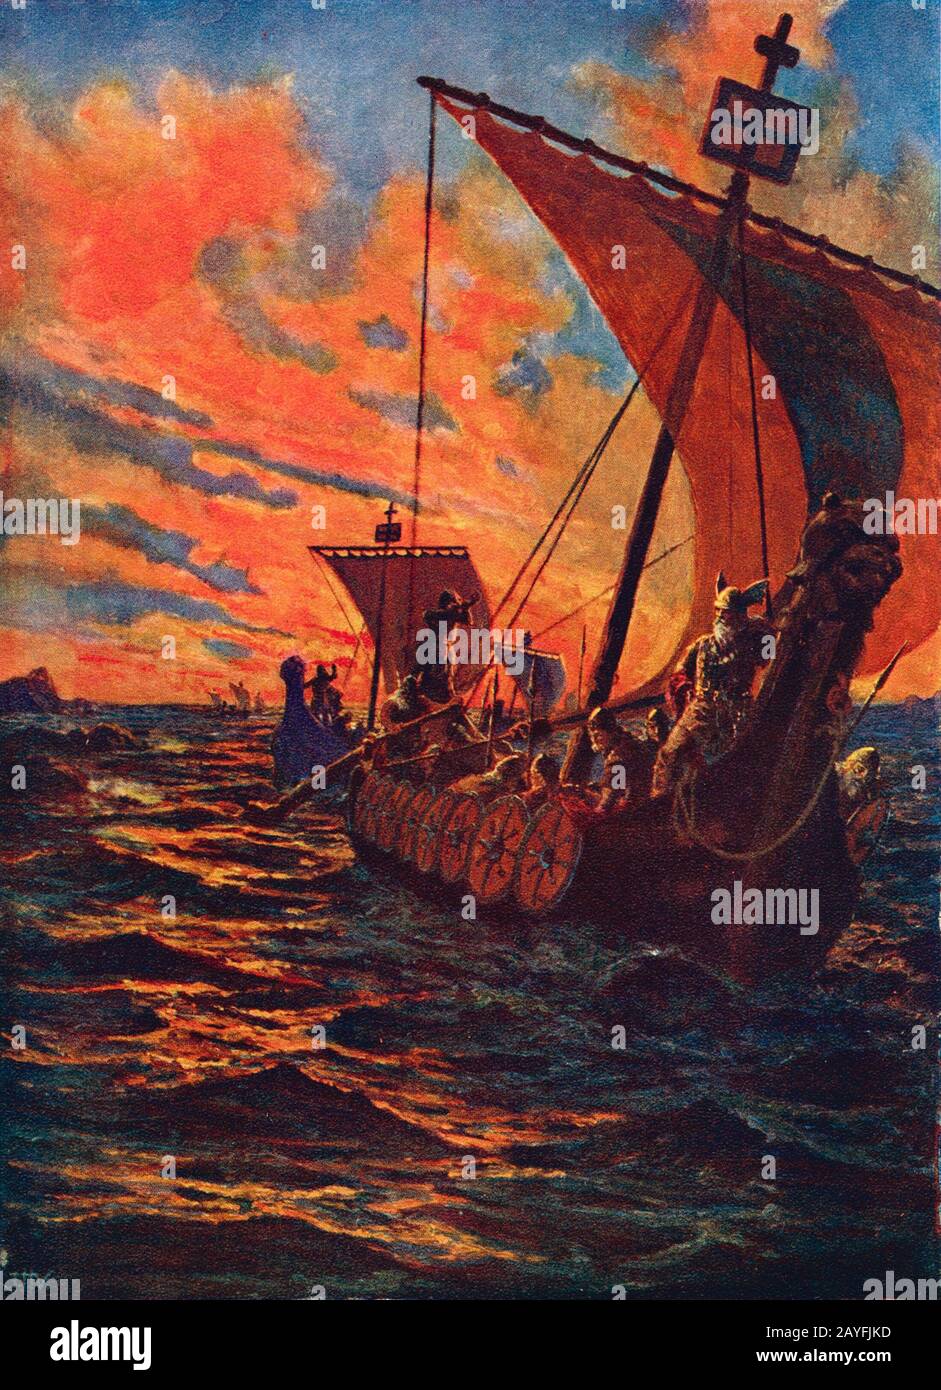 Une illustration intitulée le retour des Vikings, datée vers 1914 par John Harris Valda, montrant une flotte de long bateaux viking revenant d'un raid Banque D'Images